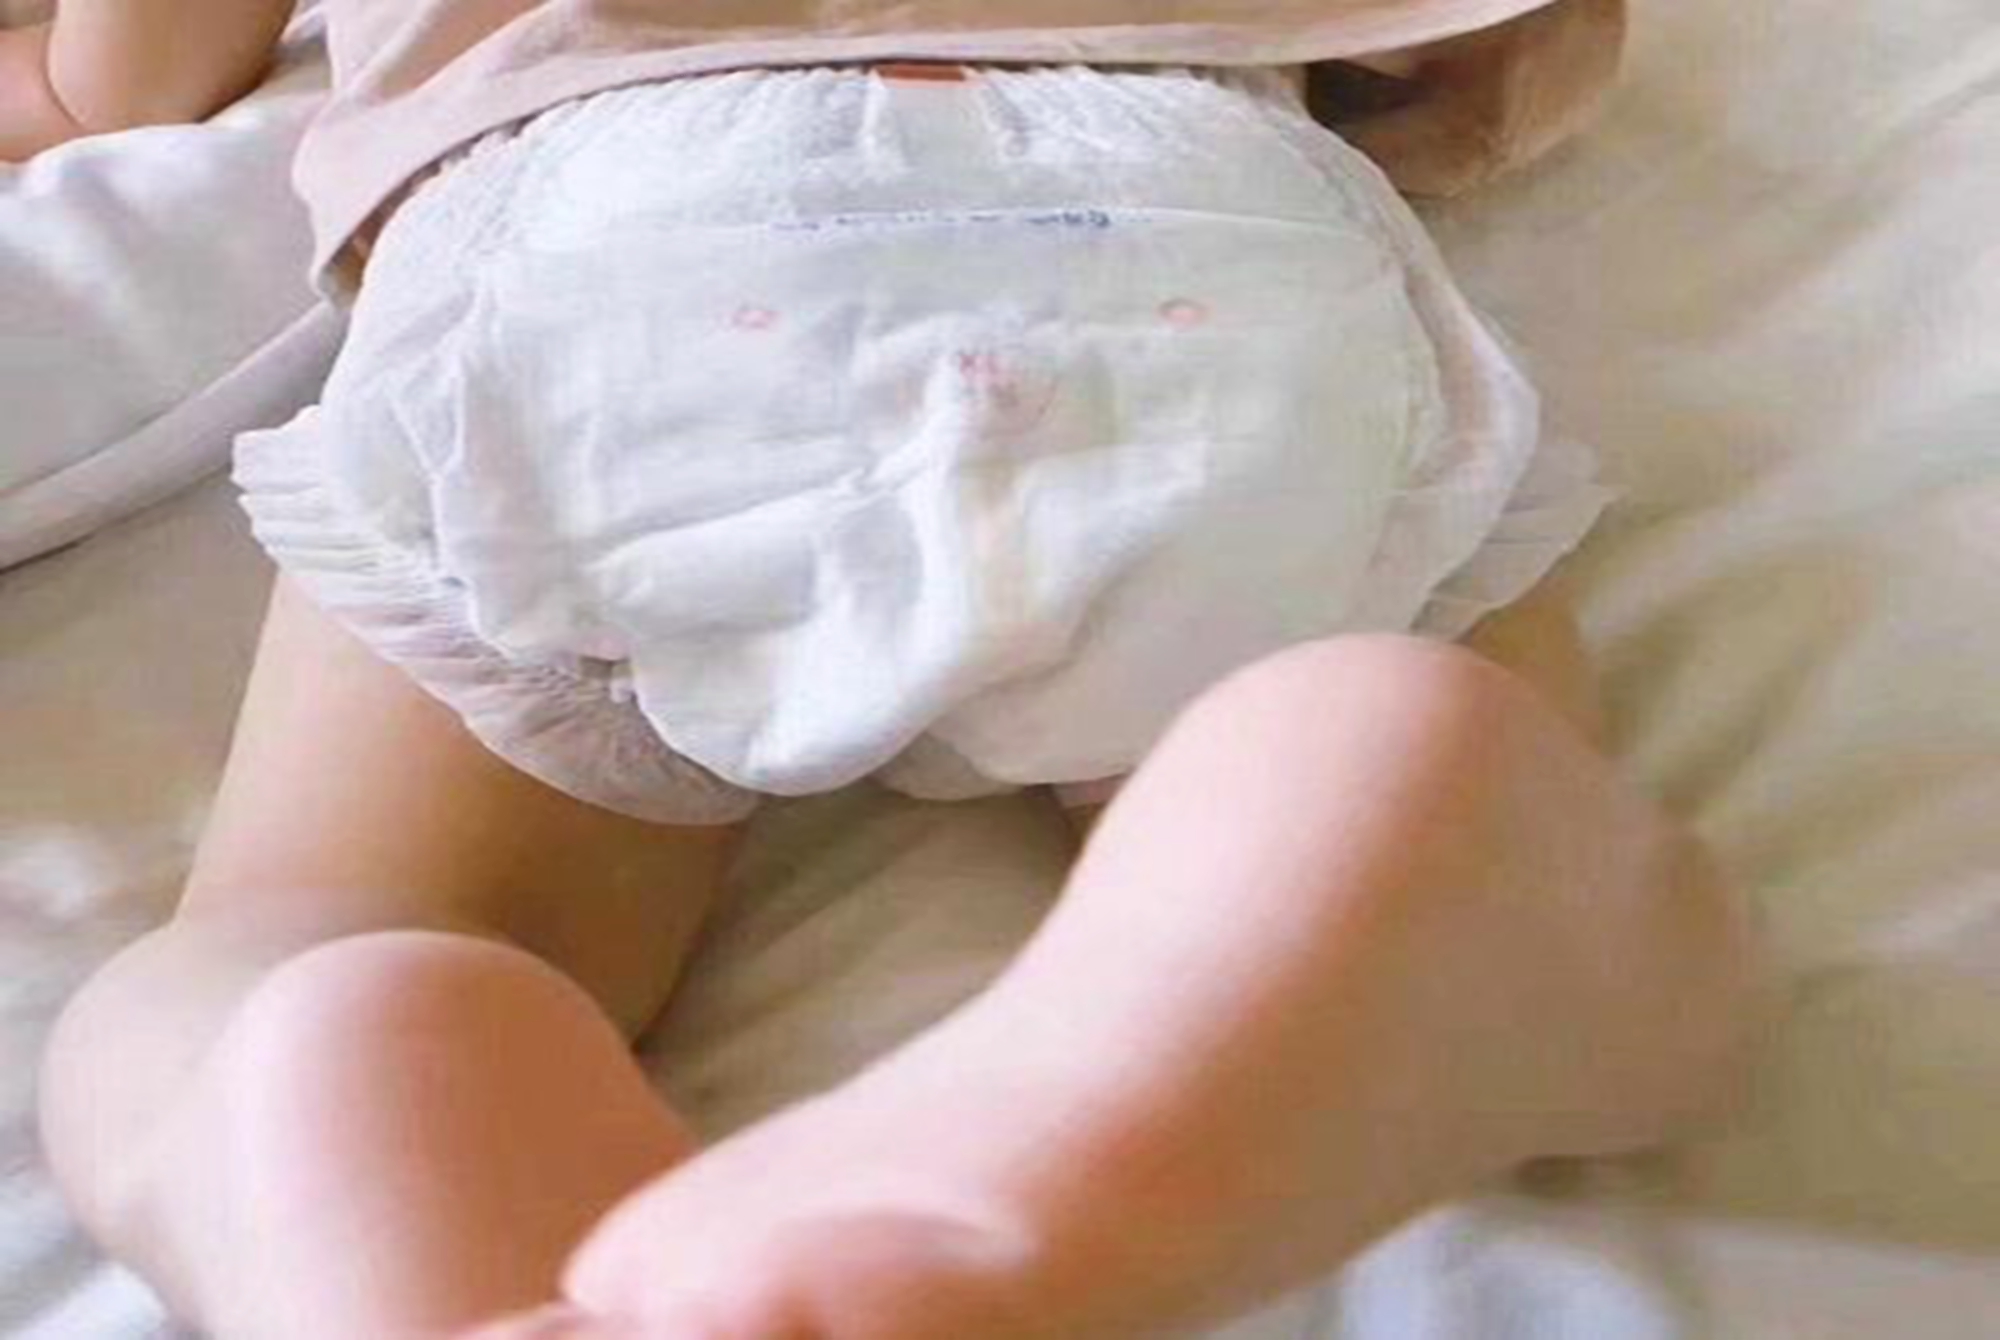 而 纸尿裤则是宝妈在育儿道路上的一个好帮手,随着纸尿裤质量的提升